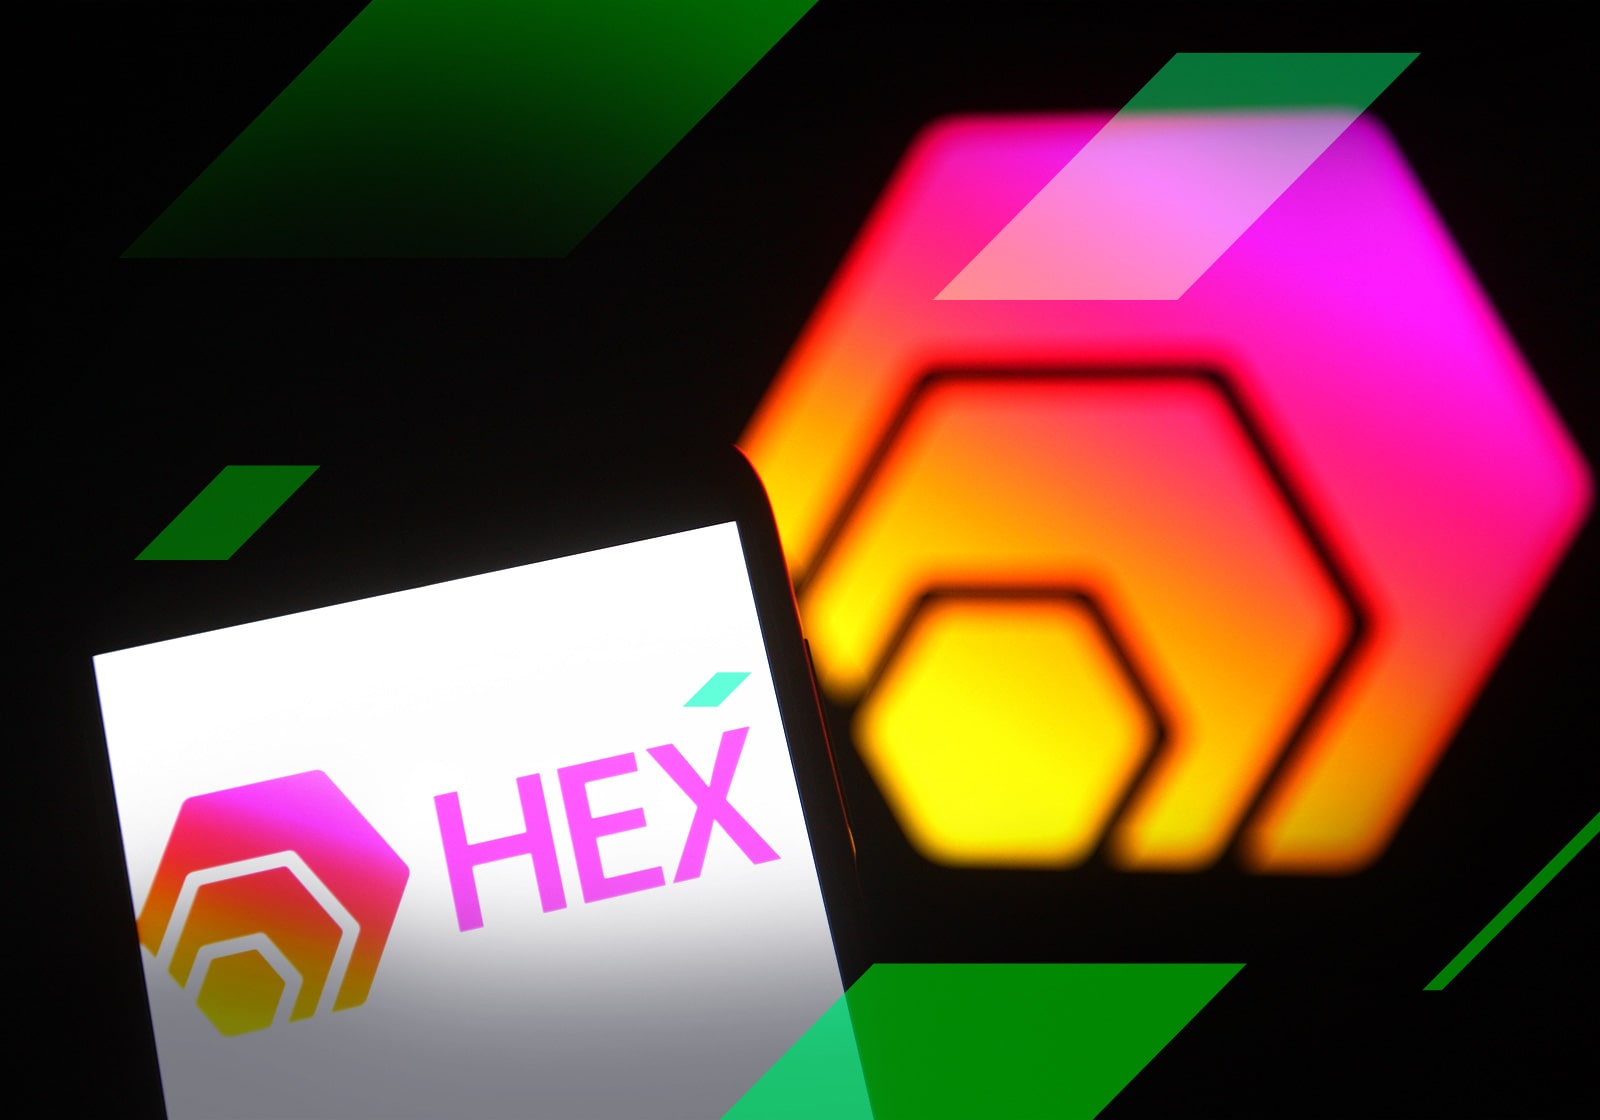 hexa price crypto